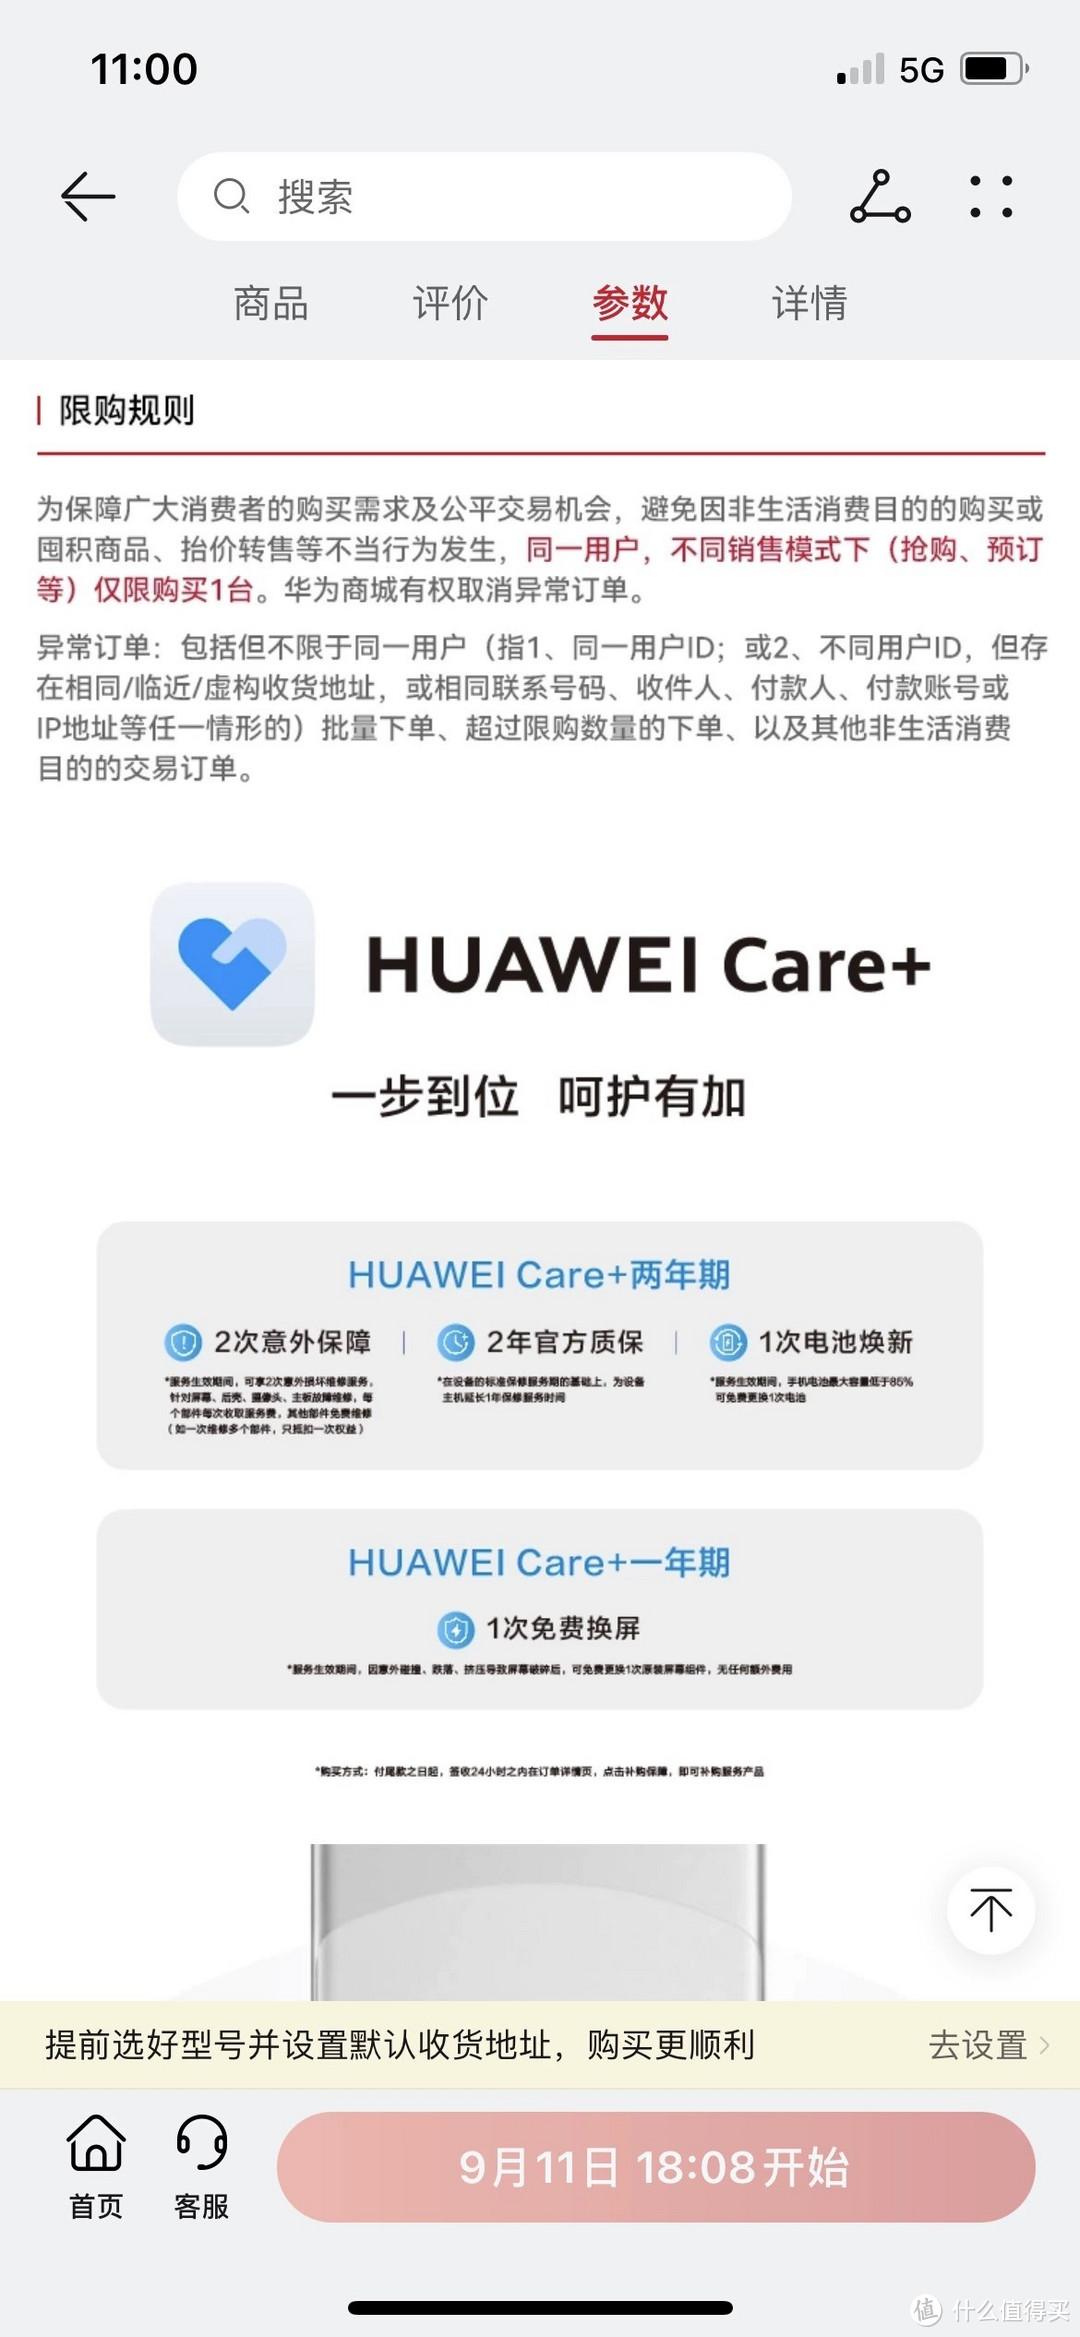 关于 Huawei Care+，已经搞清楚了